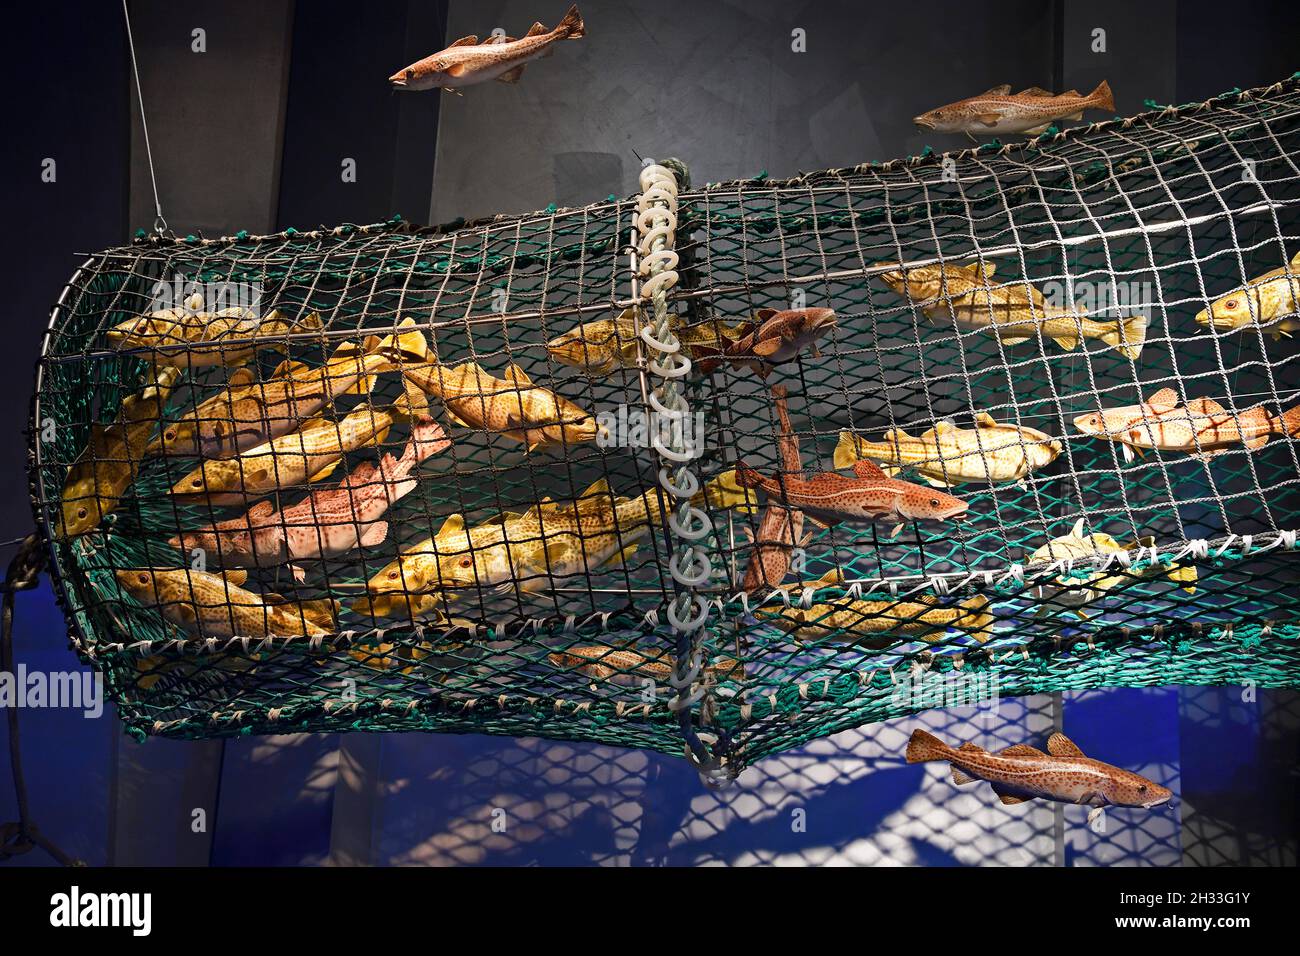 schematische Darstellung einer Fischreuse  im Ozeaneum, Hansestadt Stralsund, Mecklenburg-Vorpommern, Deutschland, Europa Stock Photo